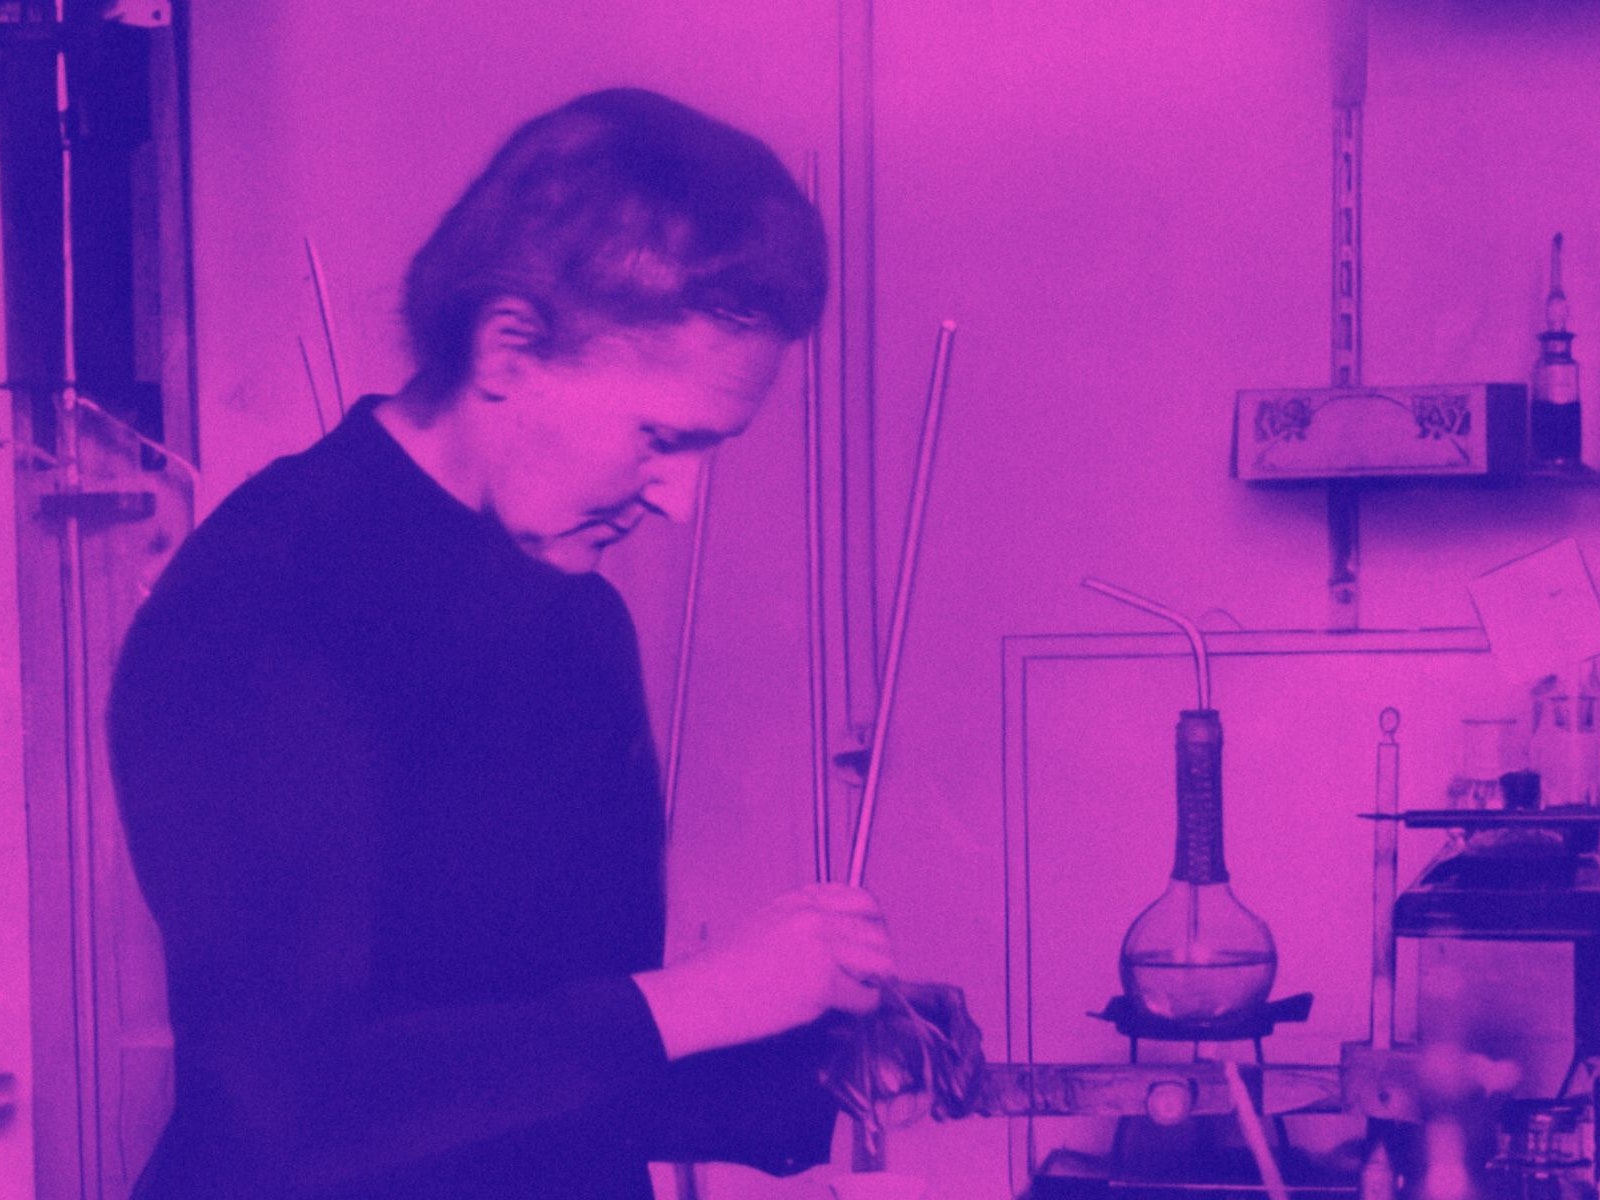 Tutto quello che ci ha lasciato in eredità Marie Curie, novant'anni dopo la sua morte